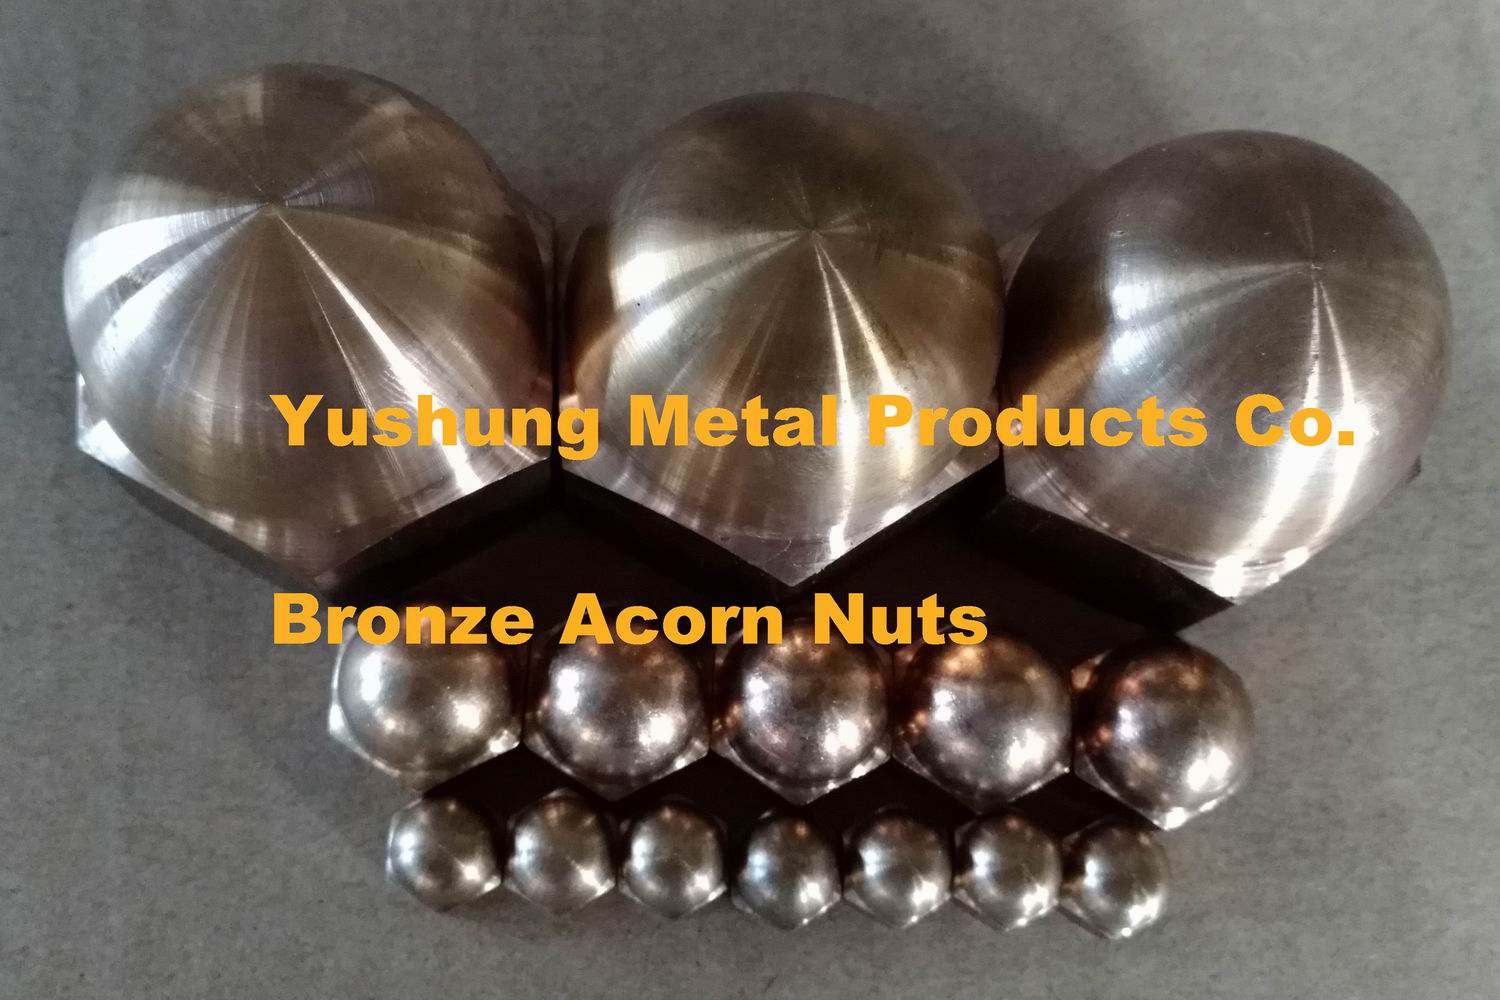 Silicon bronze acorn nuts